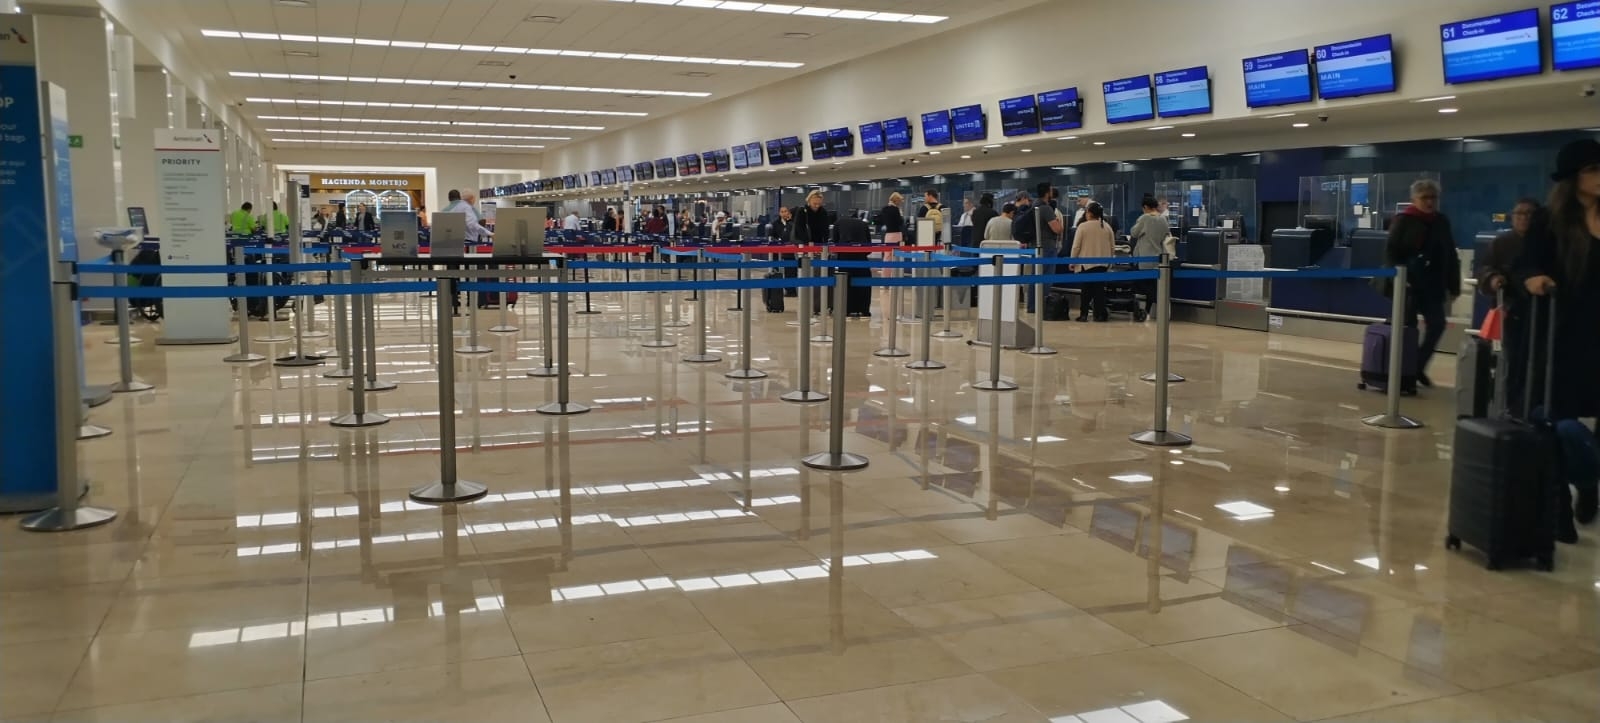 Aeropuerto de Mérida inicia el fin de semana sin vuelos retrasados